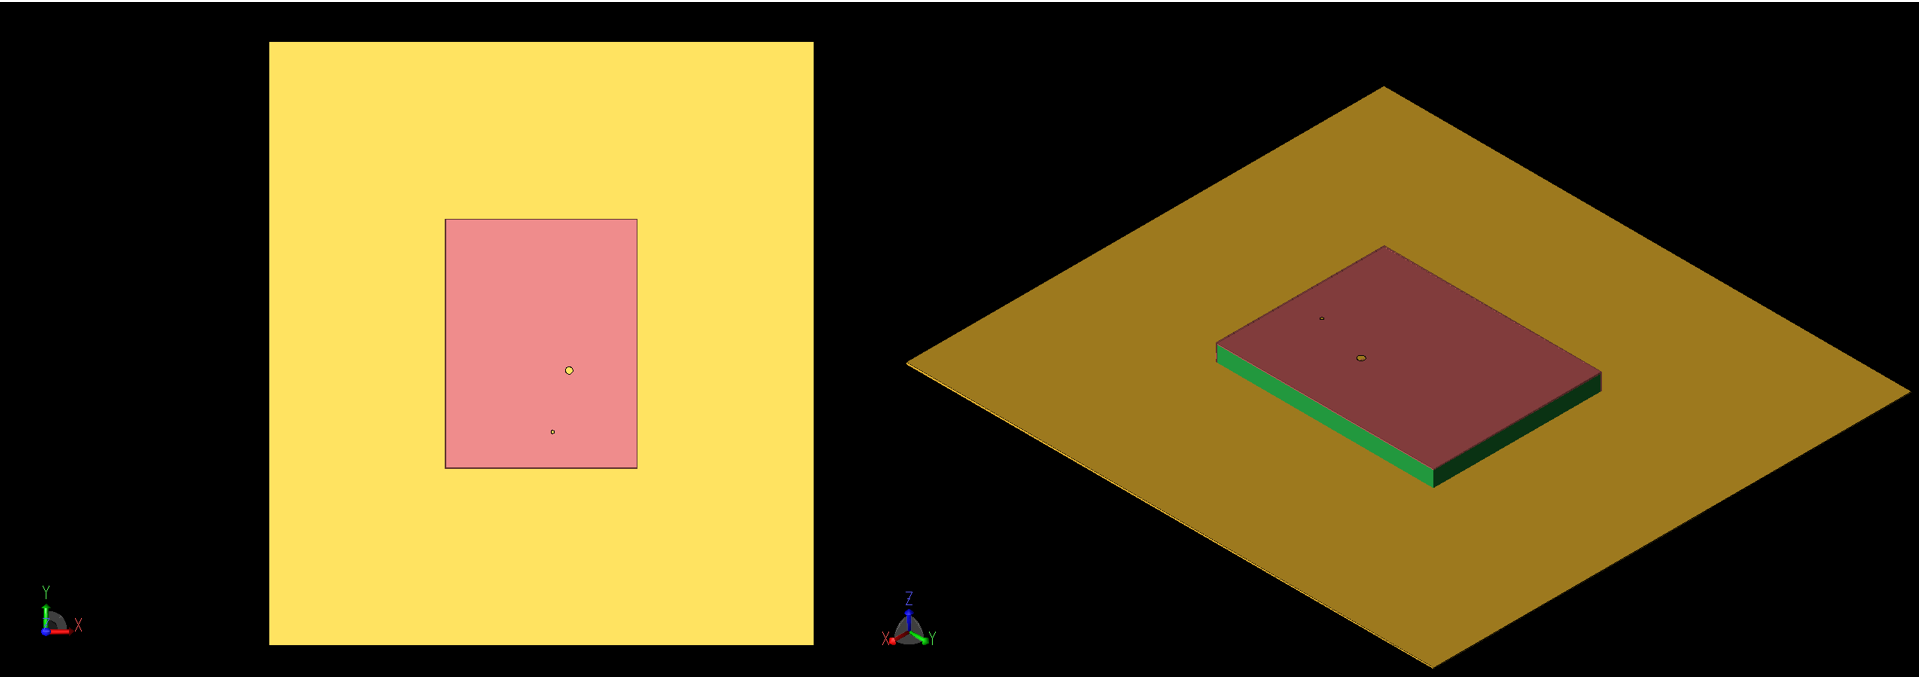 Figura 1: Vistas superior (izquierda, 1a) y en ángulo (derecha, 1b) de la geometría de la antena de parche. La alimentación coaxial y la vía son visibles como círculos grandes y pequeños en la parte superior del parche. Los lados -X y -Y del parche están en cortocircuito con el plano de tierra.